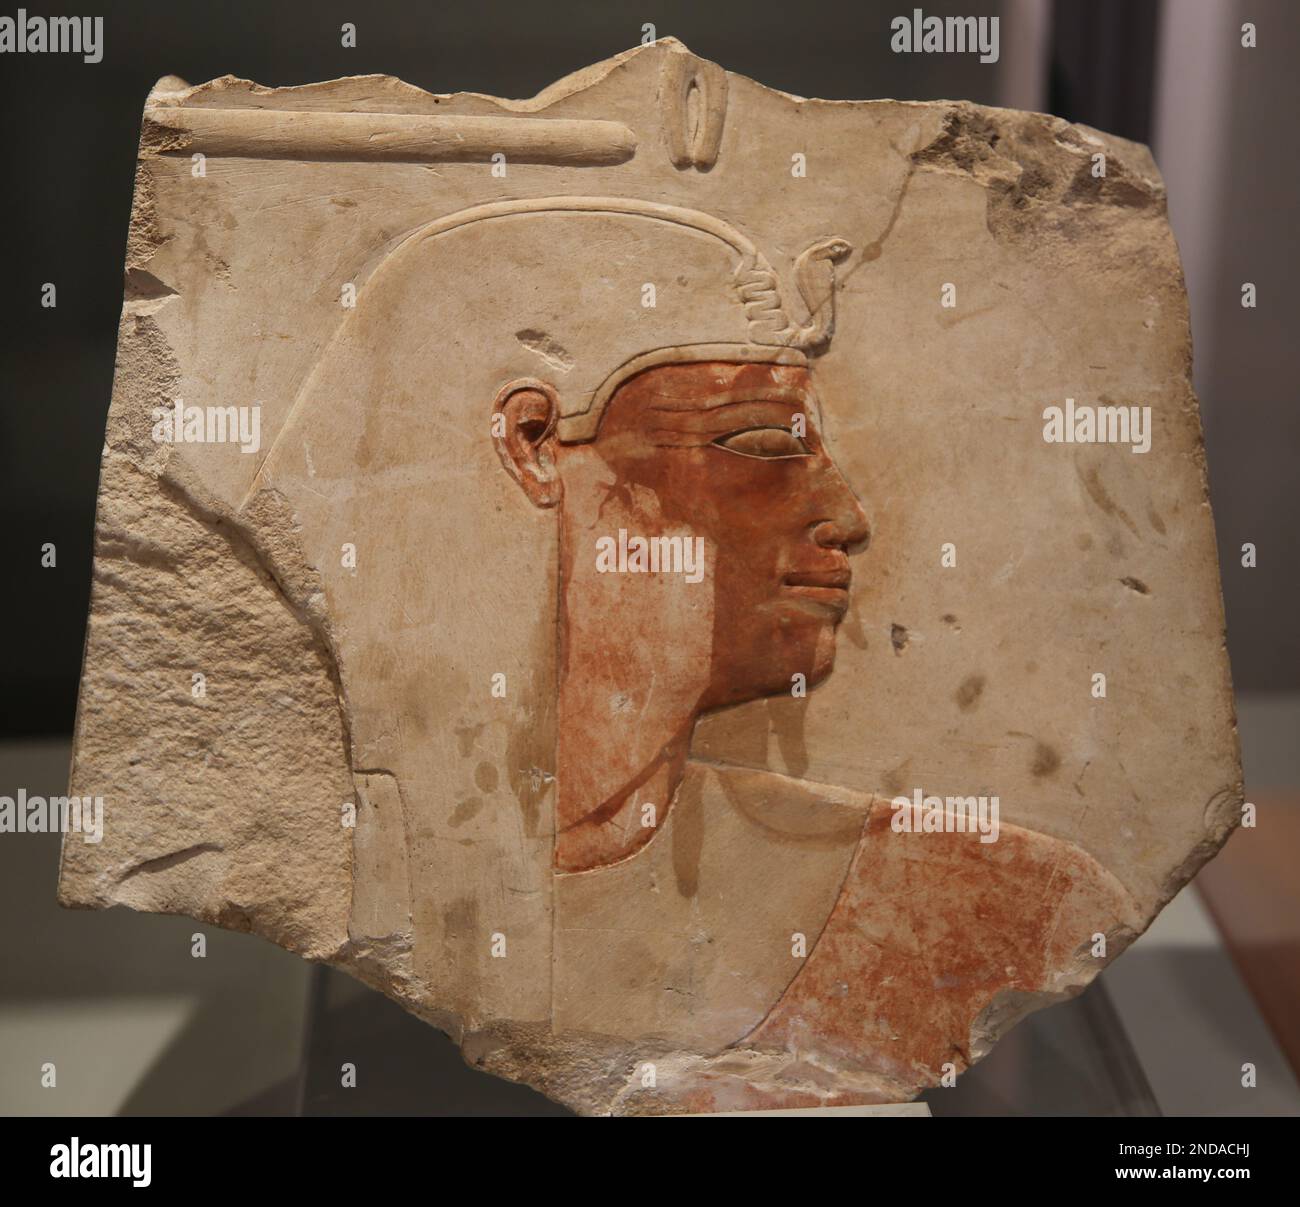 Soulagement fragmentaire d'Amenhotep I (1525-1504 av. J.-C.). Nouveau Royaume, dynastie XVIII Calcaire peint. Depuis la haute-Égypte, le Grand Temple d'Amon à Karnak, cha Banque D'Images